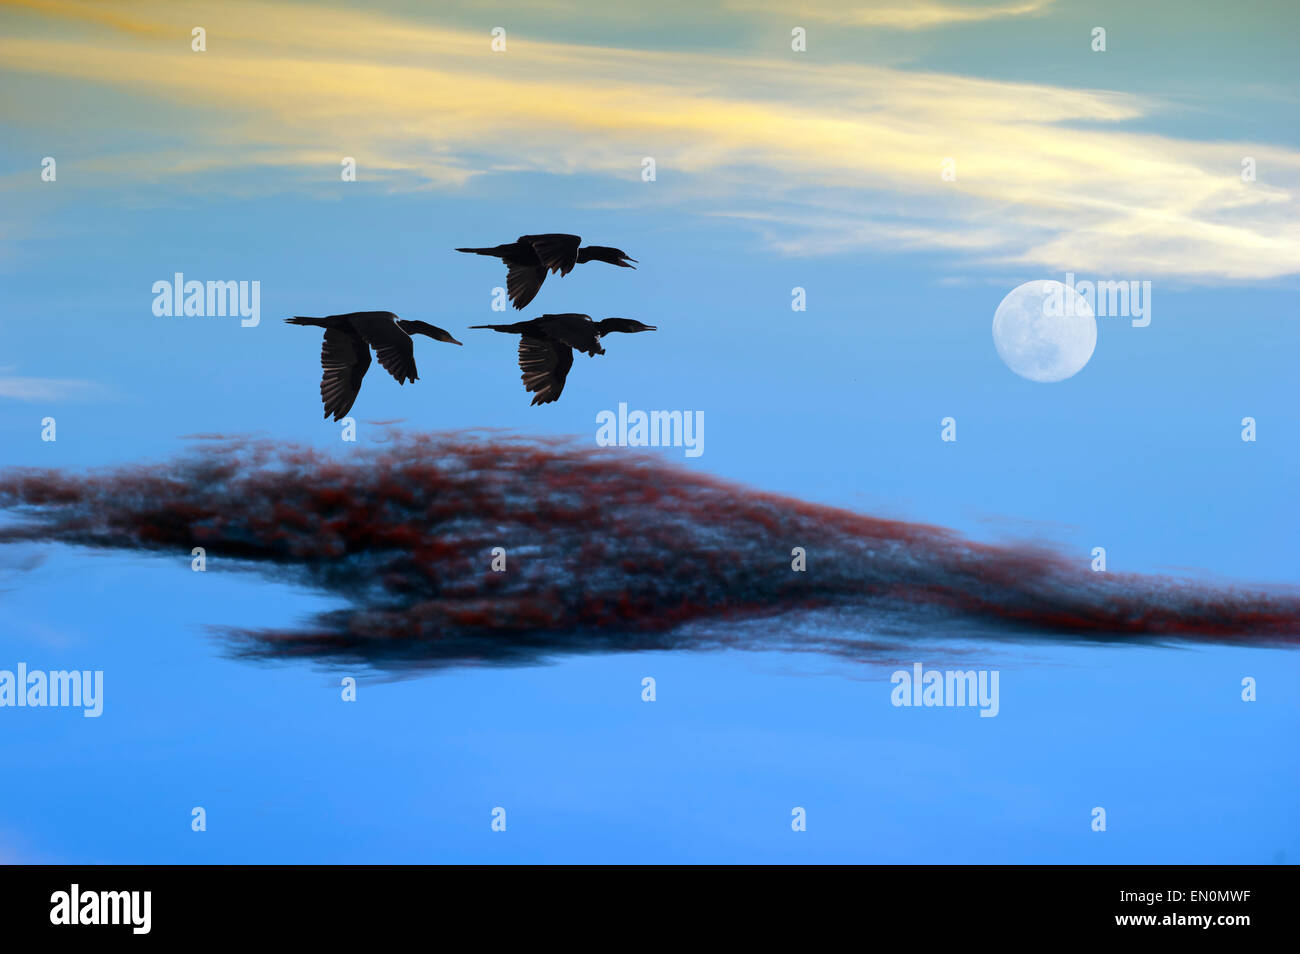 Gli uccelli sono volare insieme verso il lontano luna tra le nuvole colorate. Foto Stock